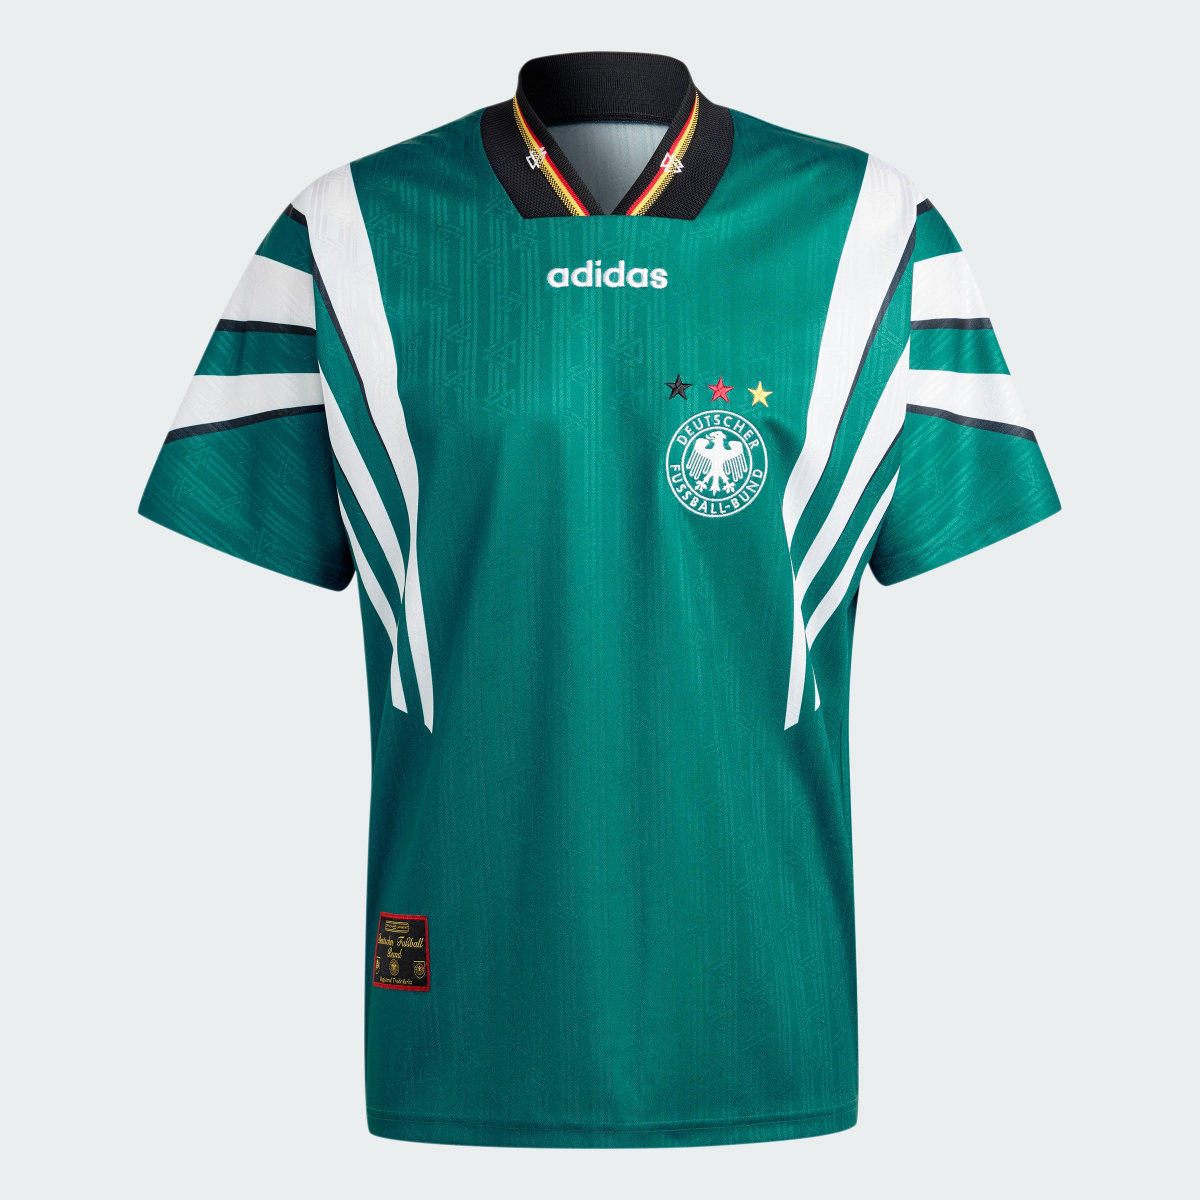 Adidas Koszulka Germany 1996 Away. 5